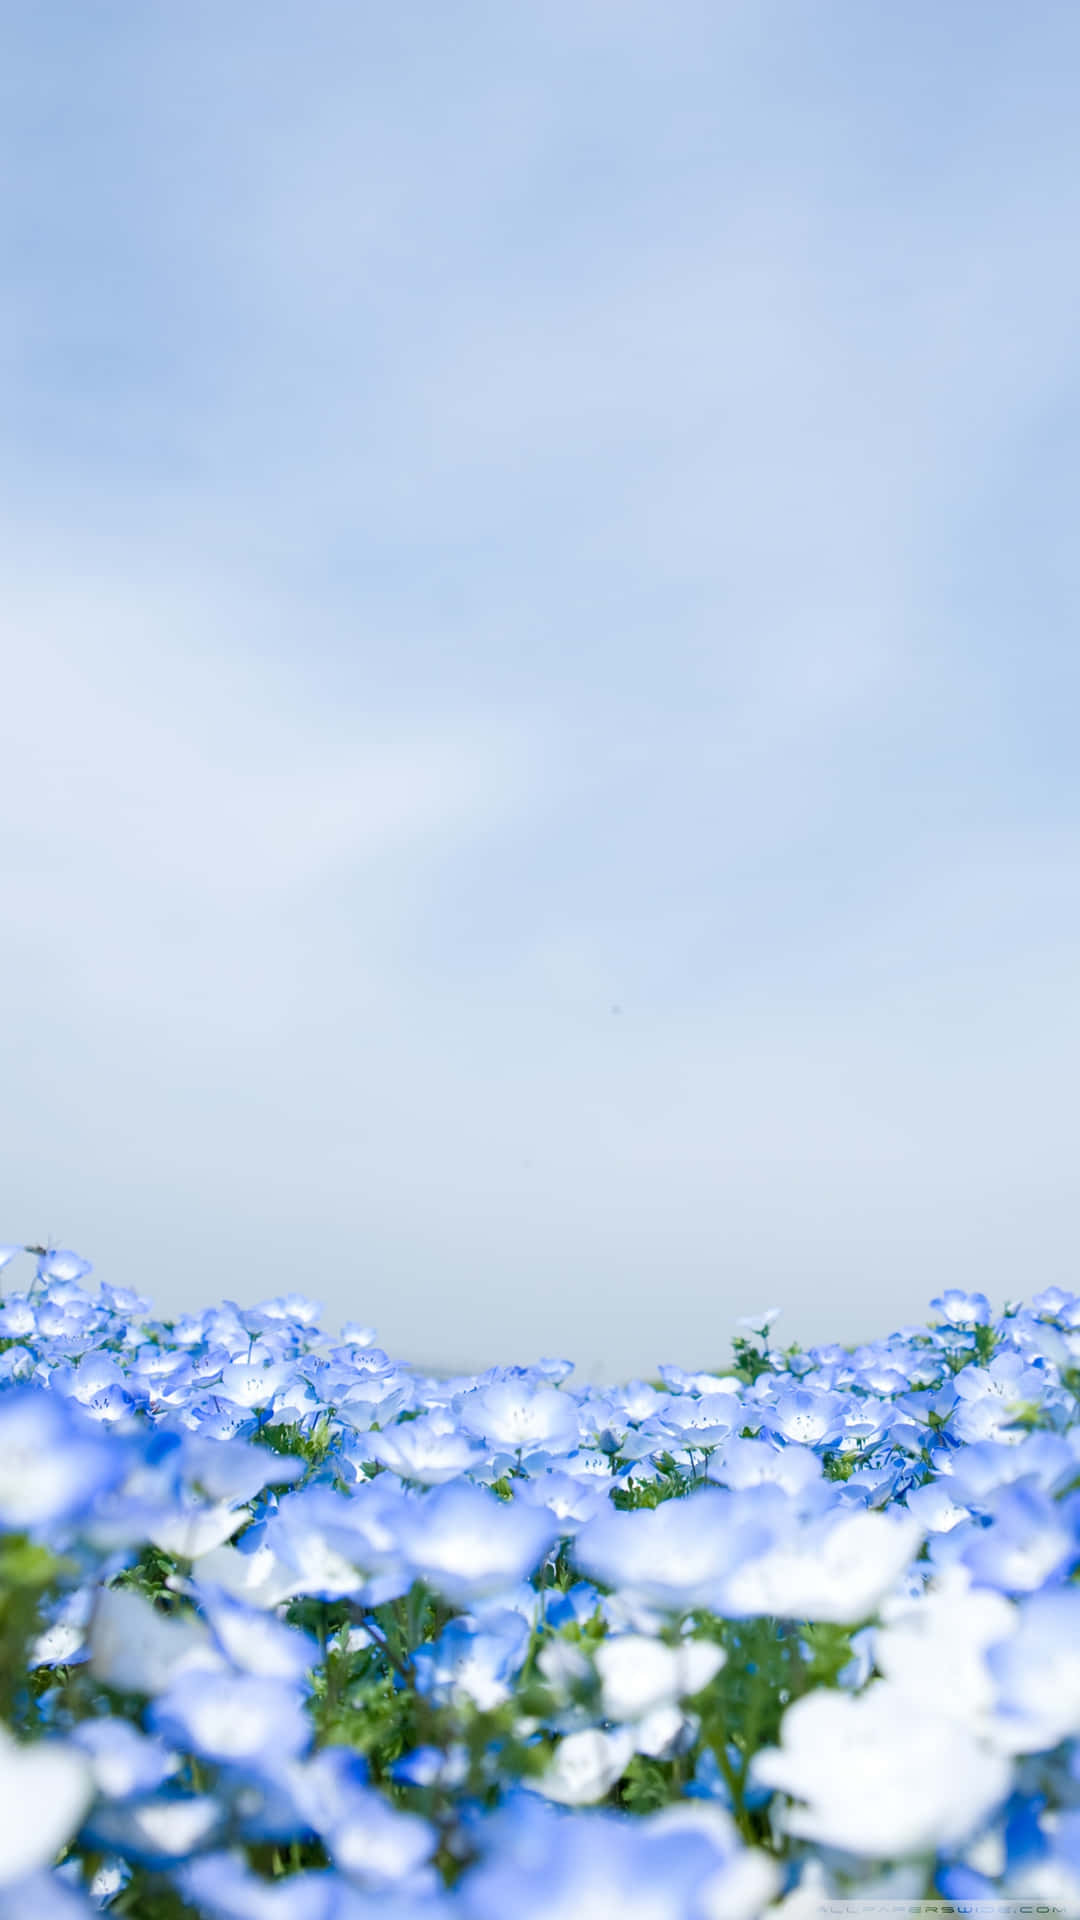 Trädgårdmed Bild Av Kristallblåa Blommor Som Bakgrundsbild För Din Dator Eller Mobil.